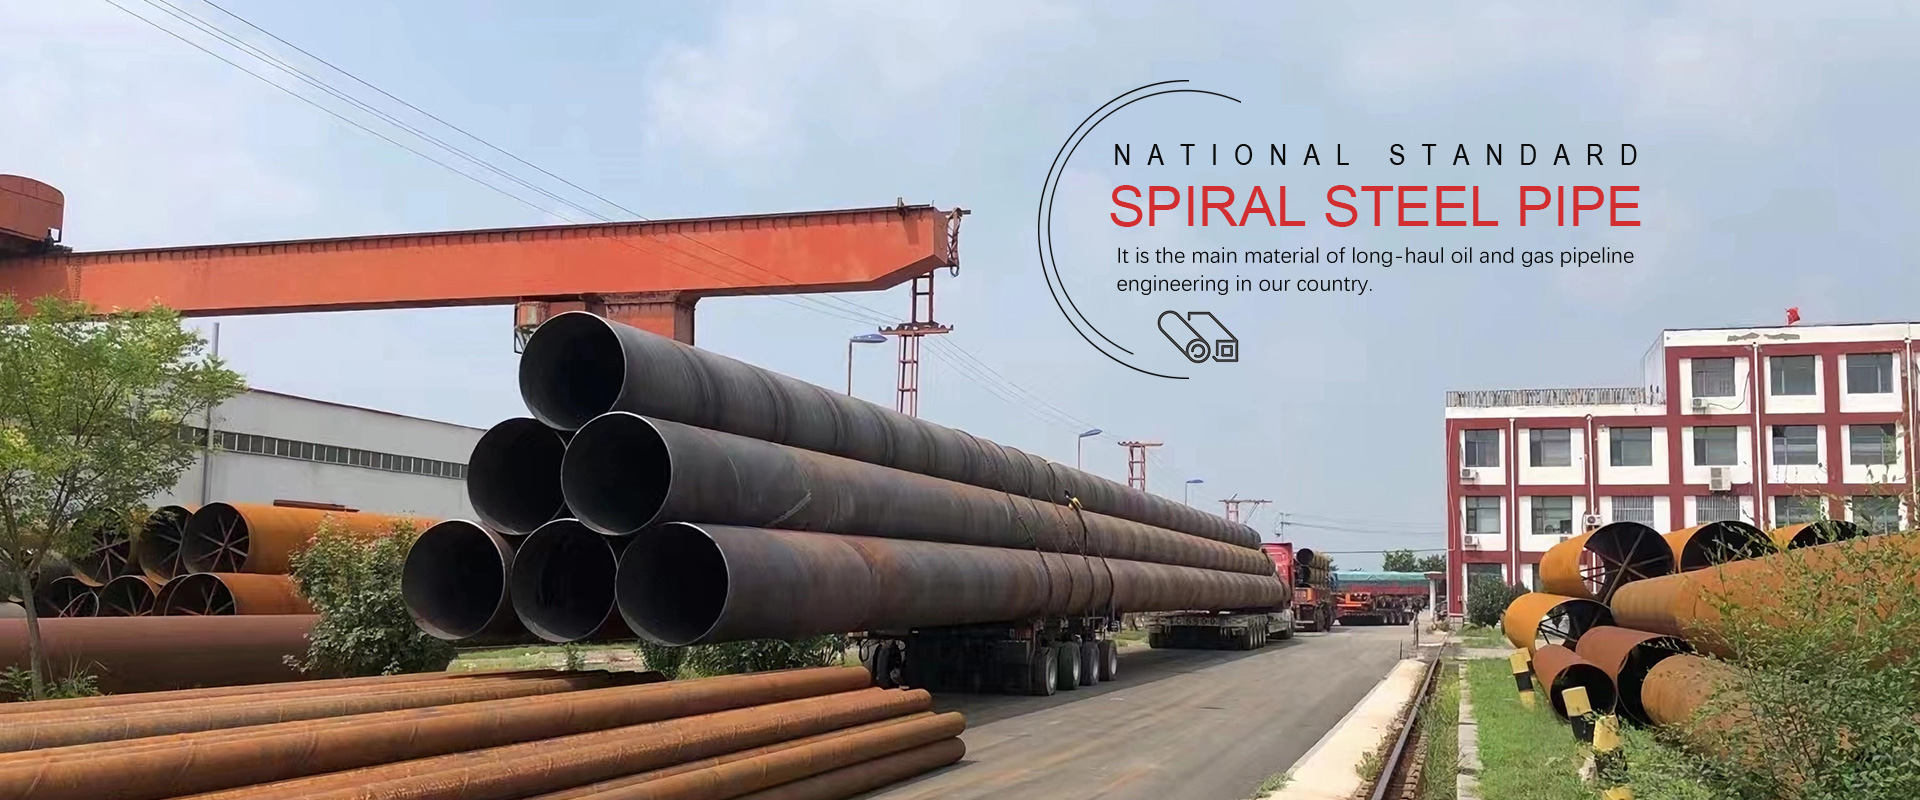 Fabricants et usine de tuyaux en acier en spirale